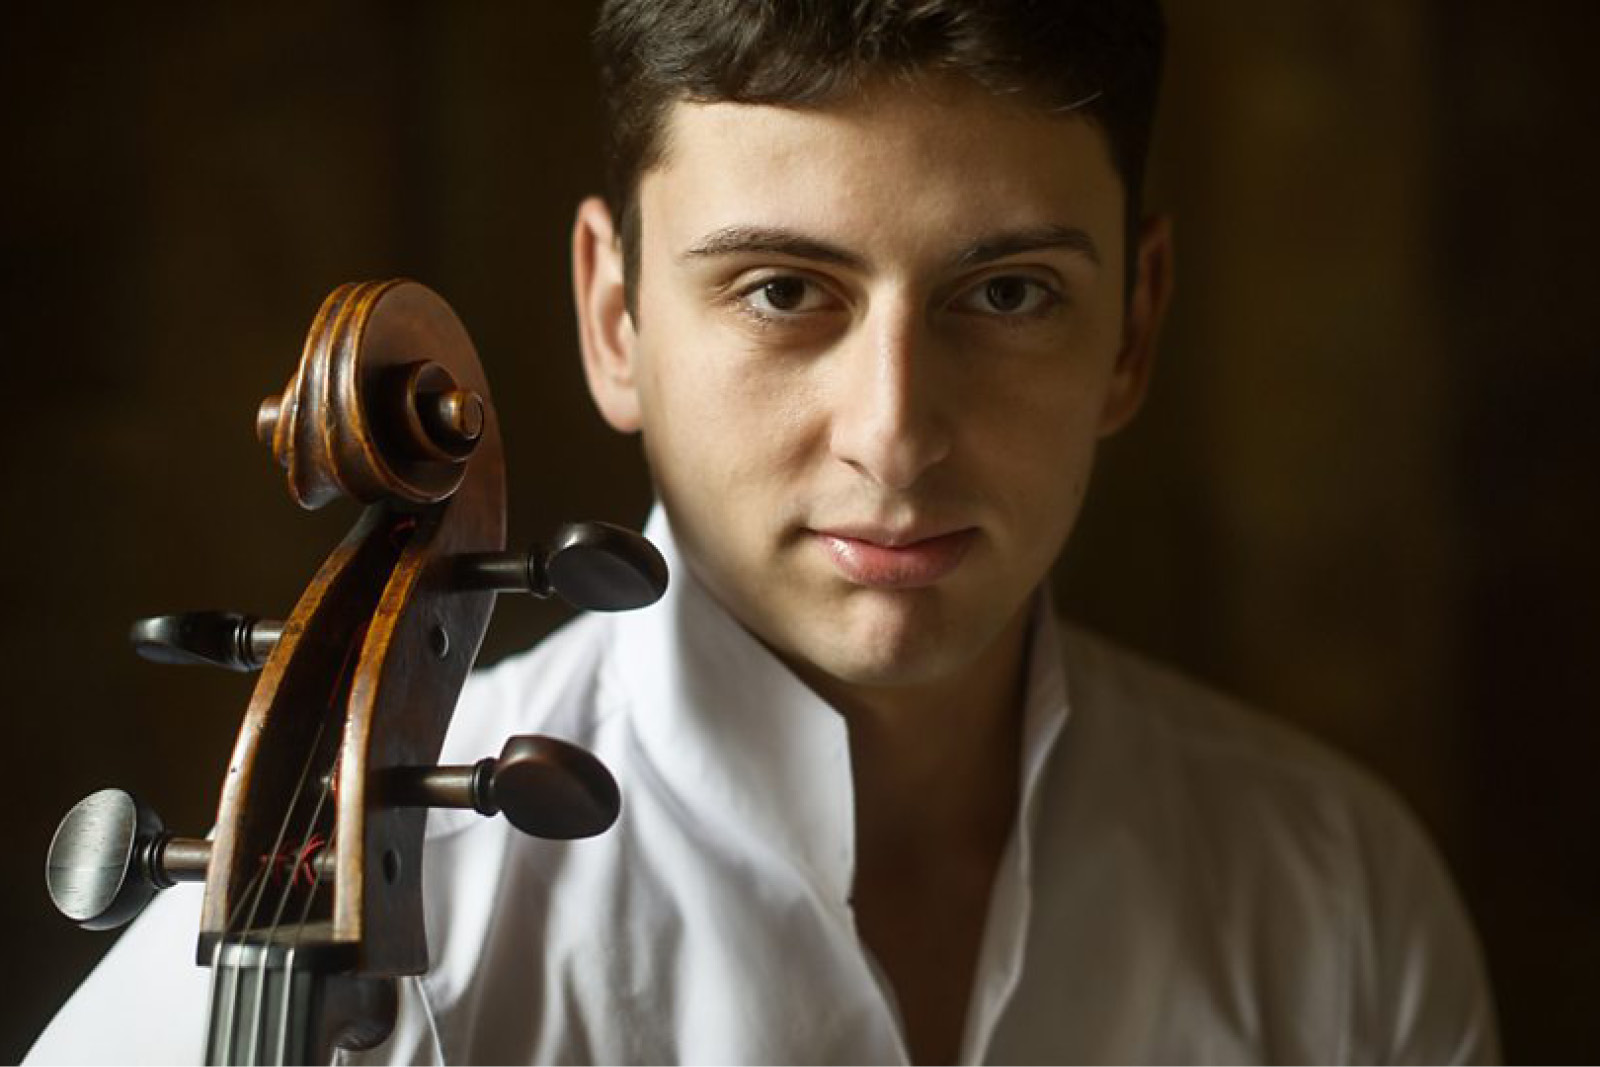 Narek Hakhnazaryan